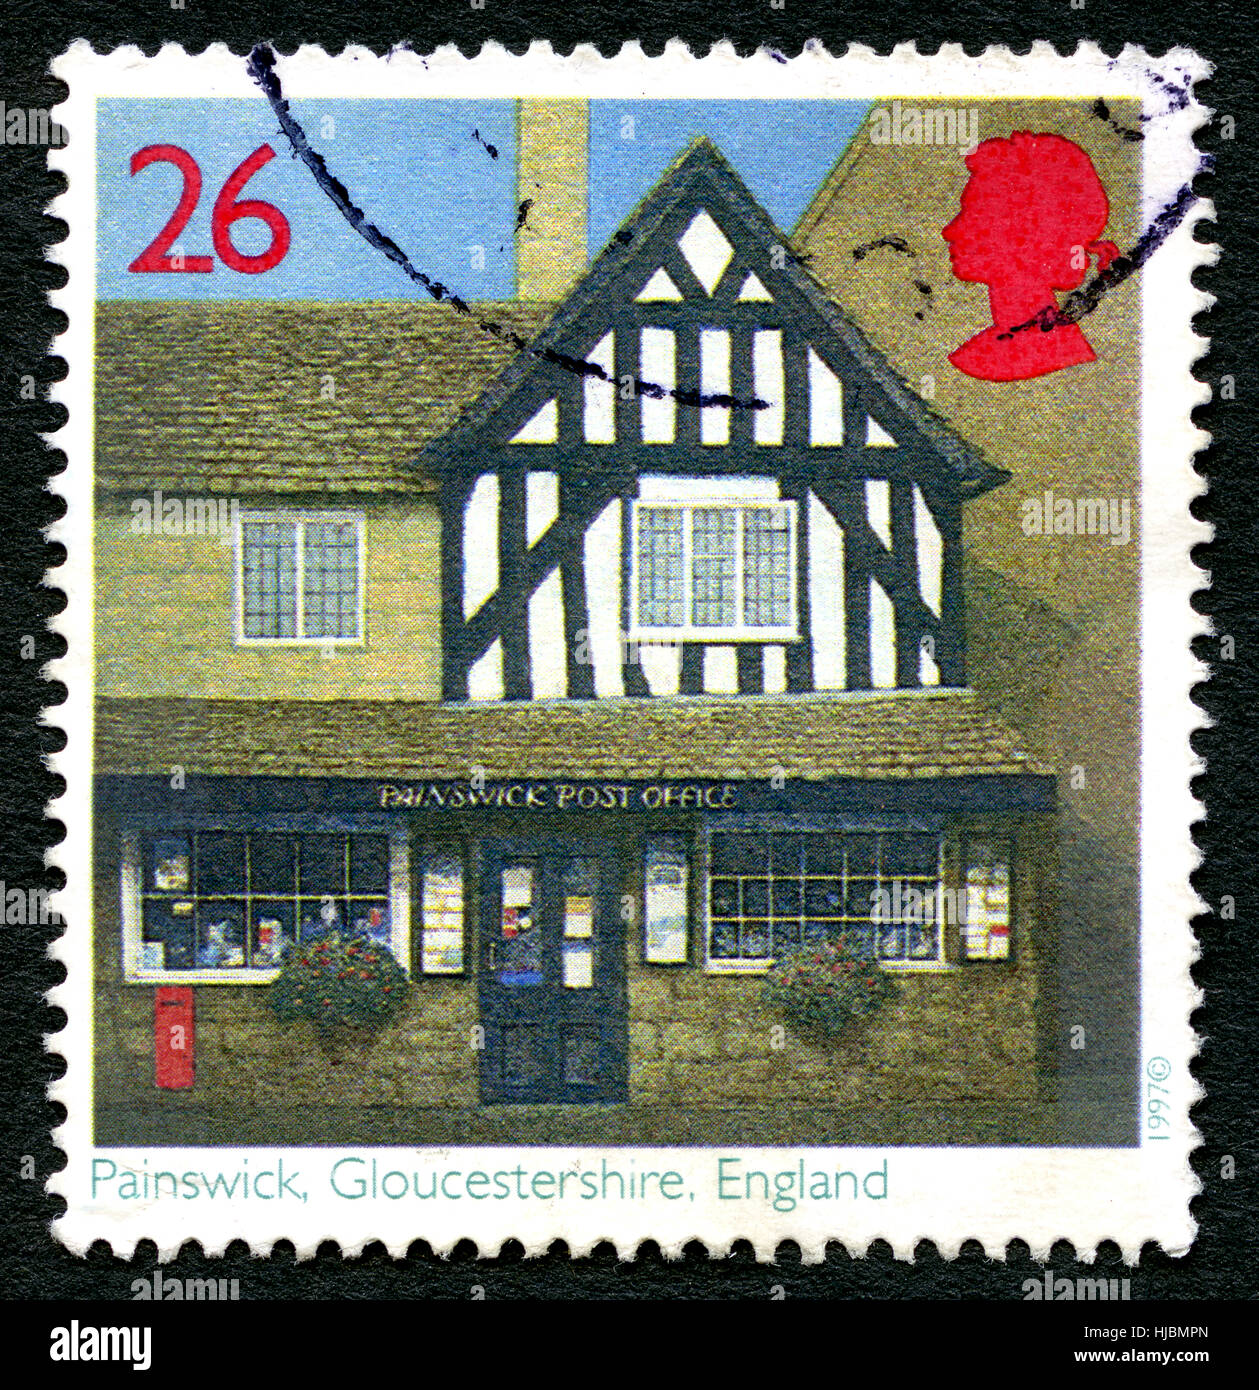 Großbritannien - CIRCA 1997: Eine gebrauchte Briefmarke aus dem Vereinigten Königreich, ein Bild einer hübschen Poststelle in Painswick, Gloucestershire, ca. 1997. Stockfoto